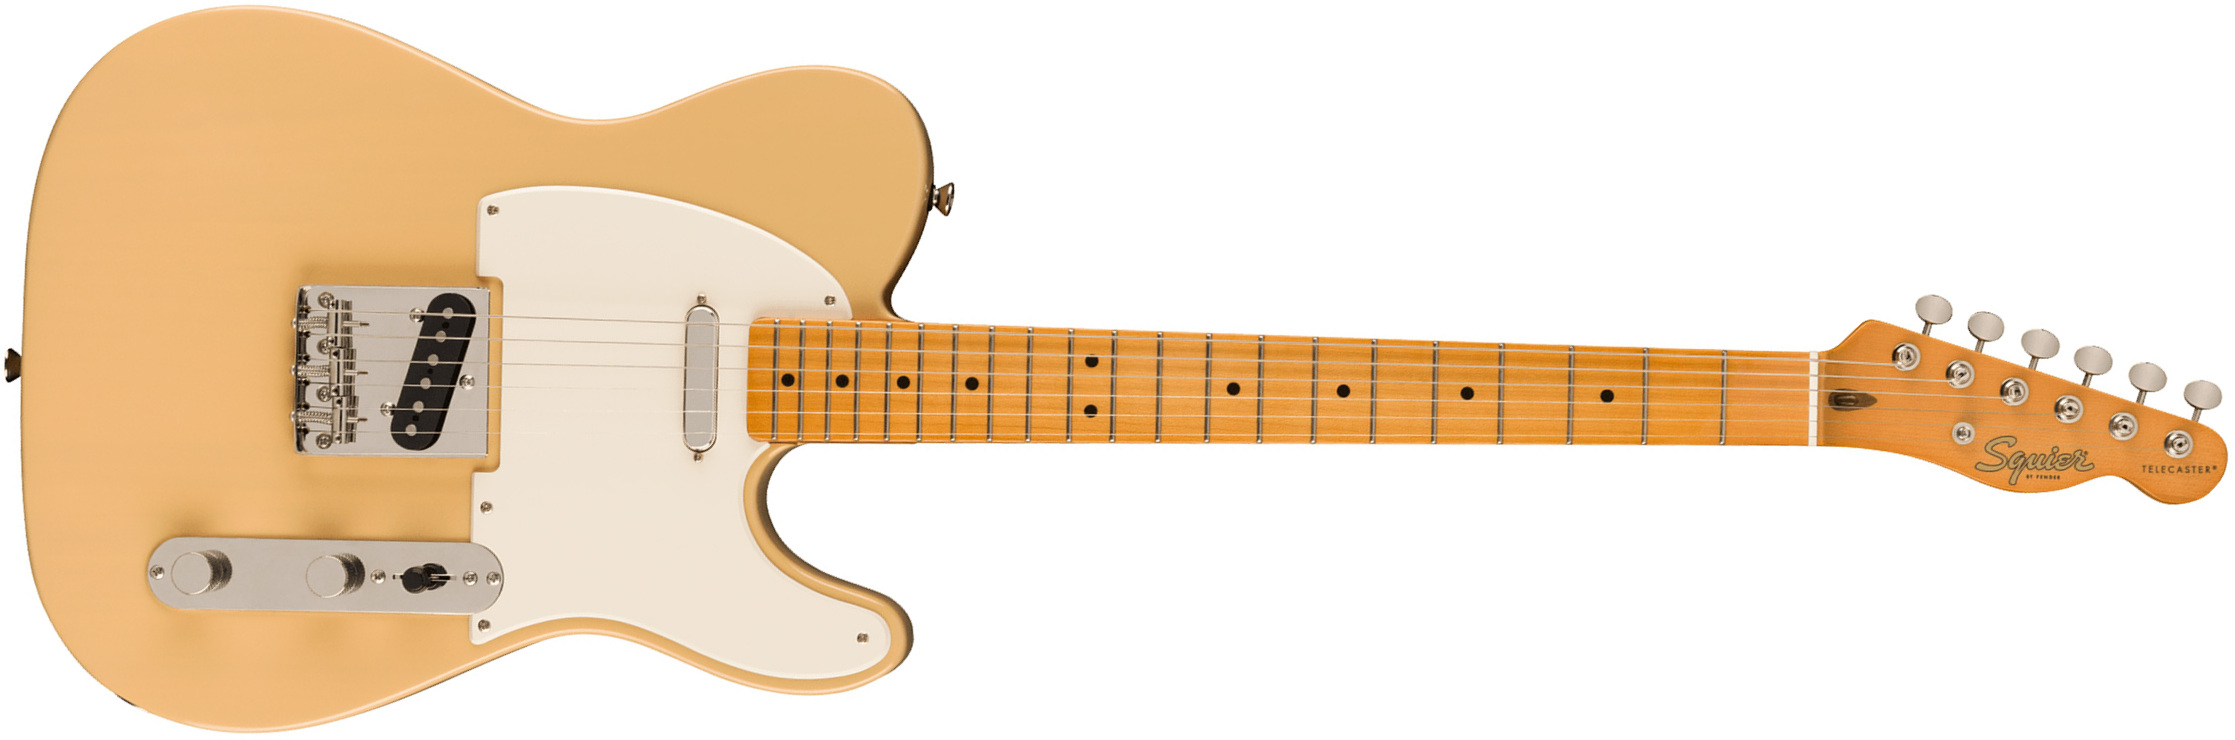 Squier Tele '50s Parchment Pickguard Classic Vibe Fsr 2s Ht Mn - Vintage Blonde - Guitarra eléctrica con forma de tel - Main picture